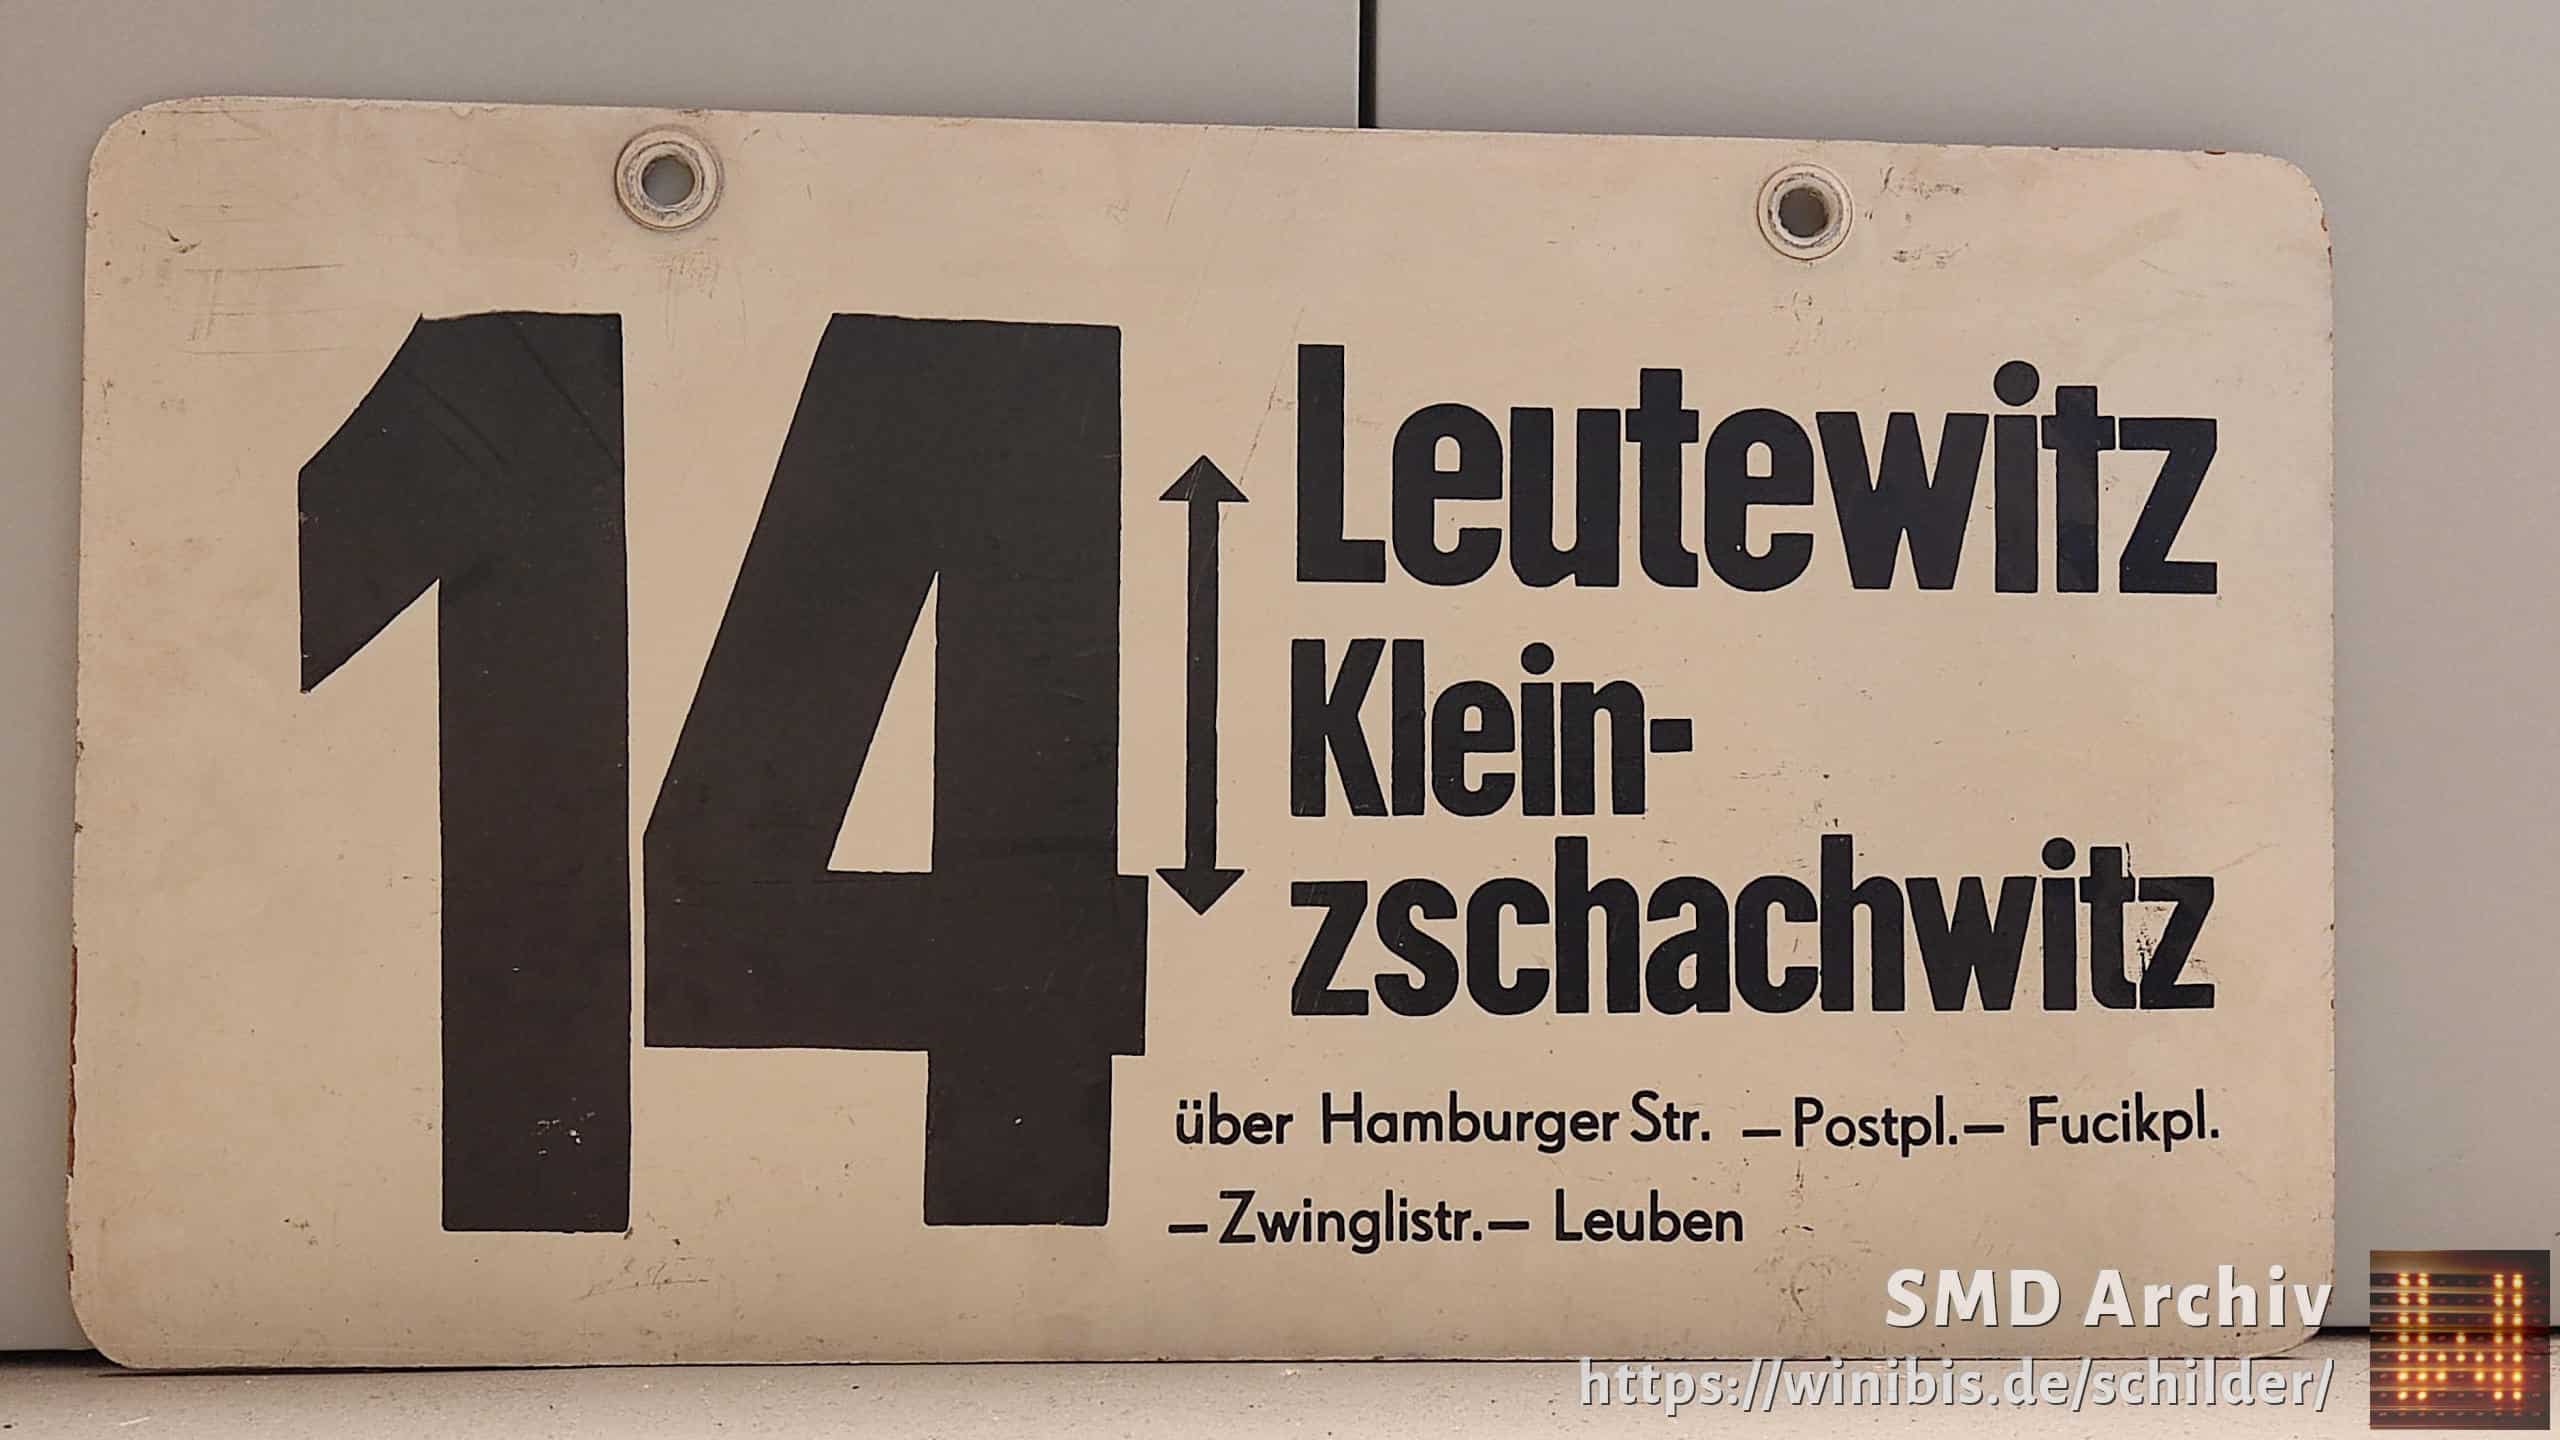 14 Leutewitz – Klein- zschachwitz #1